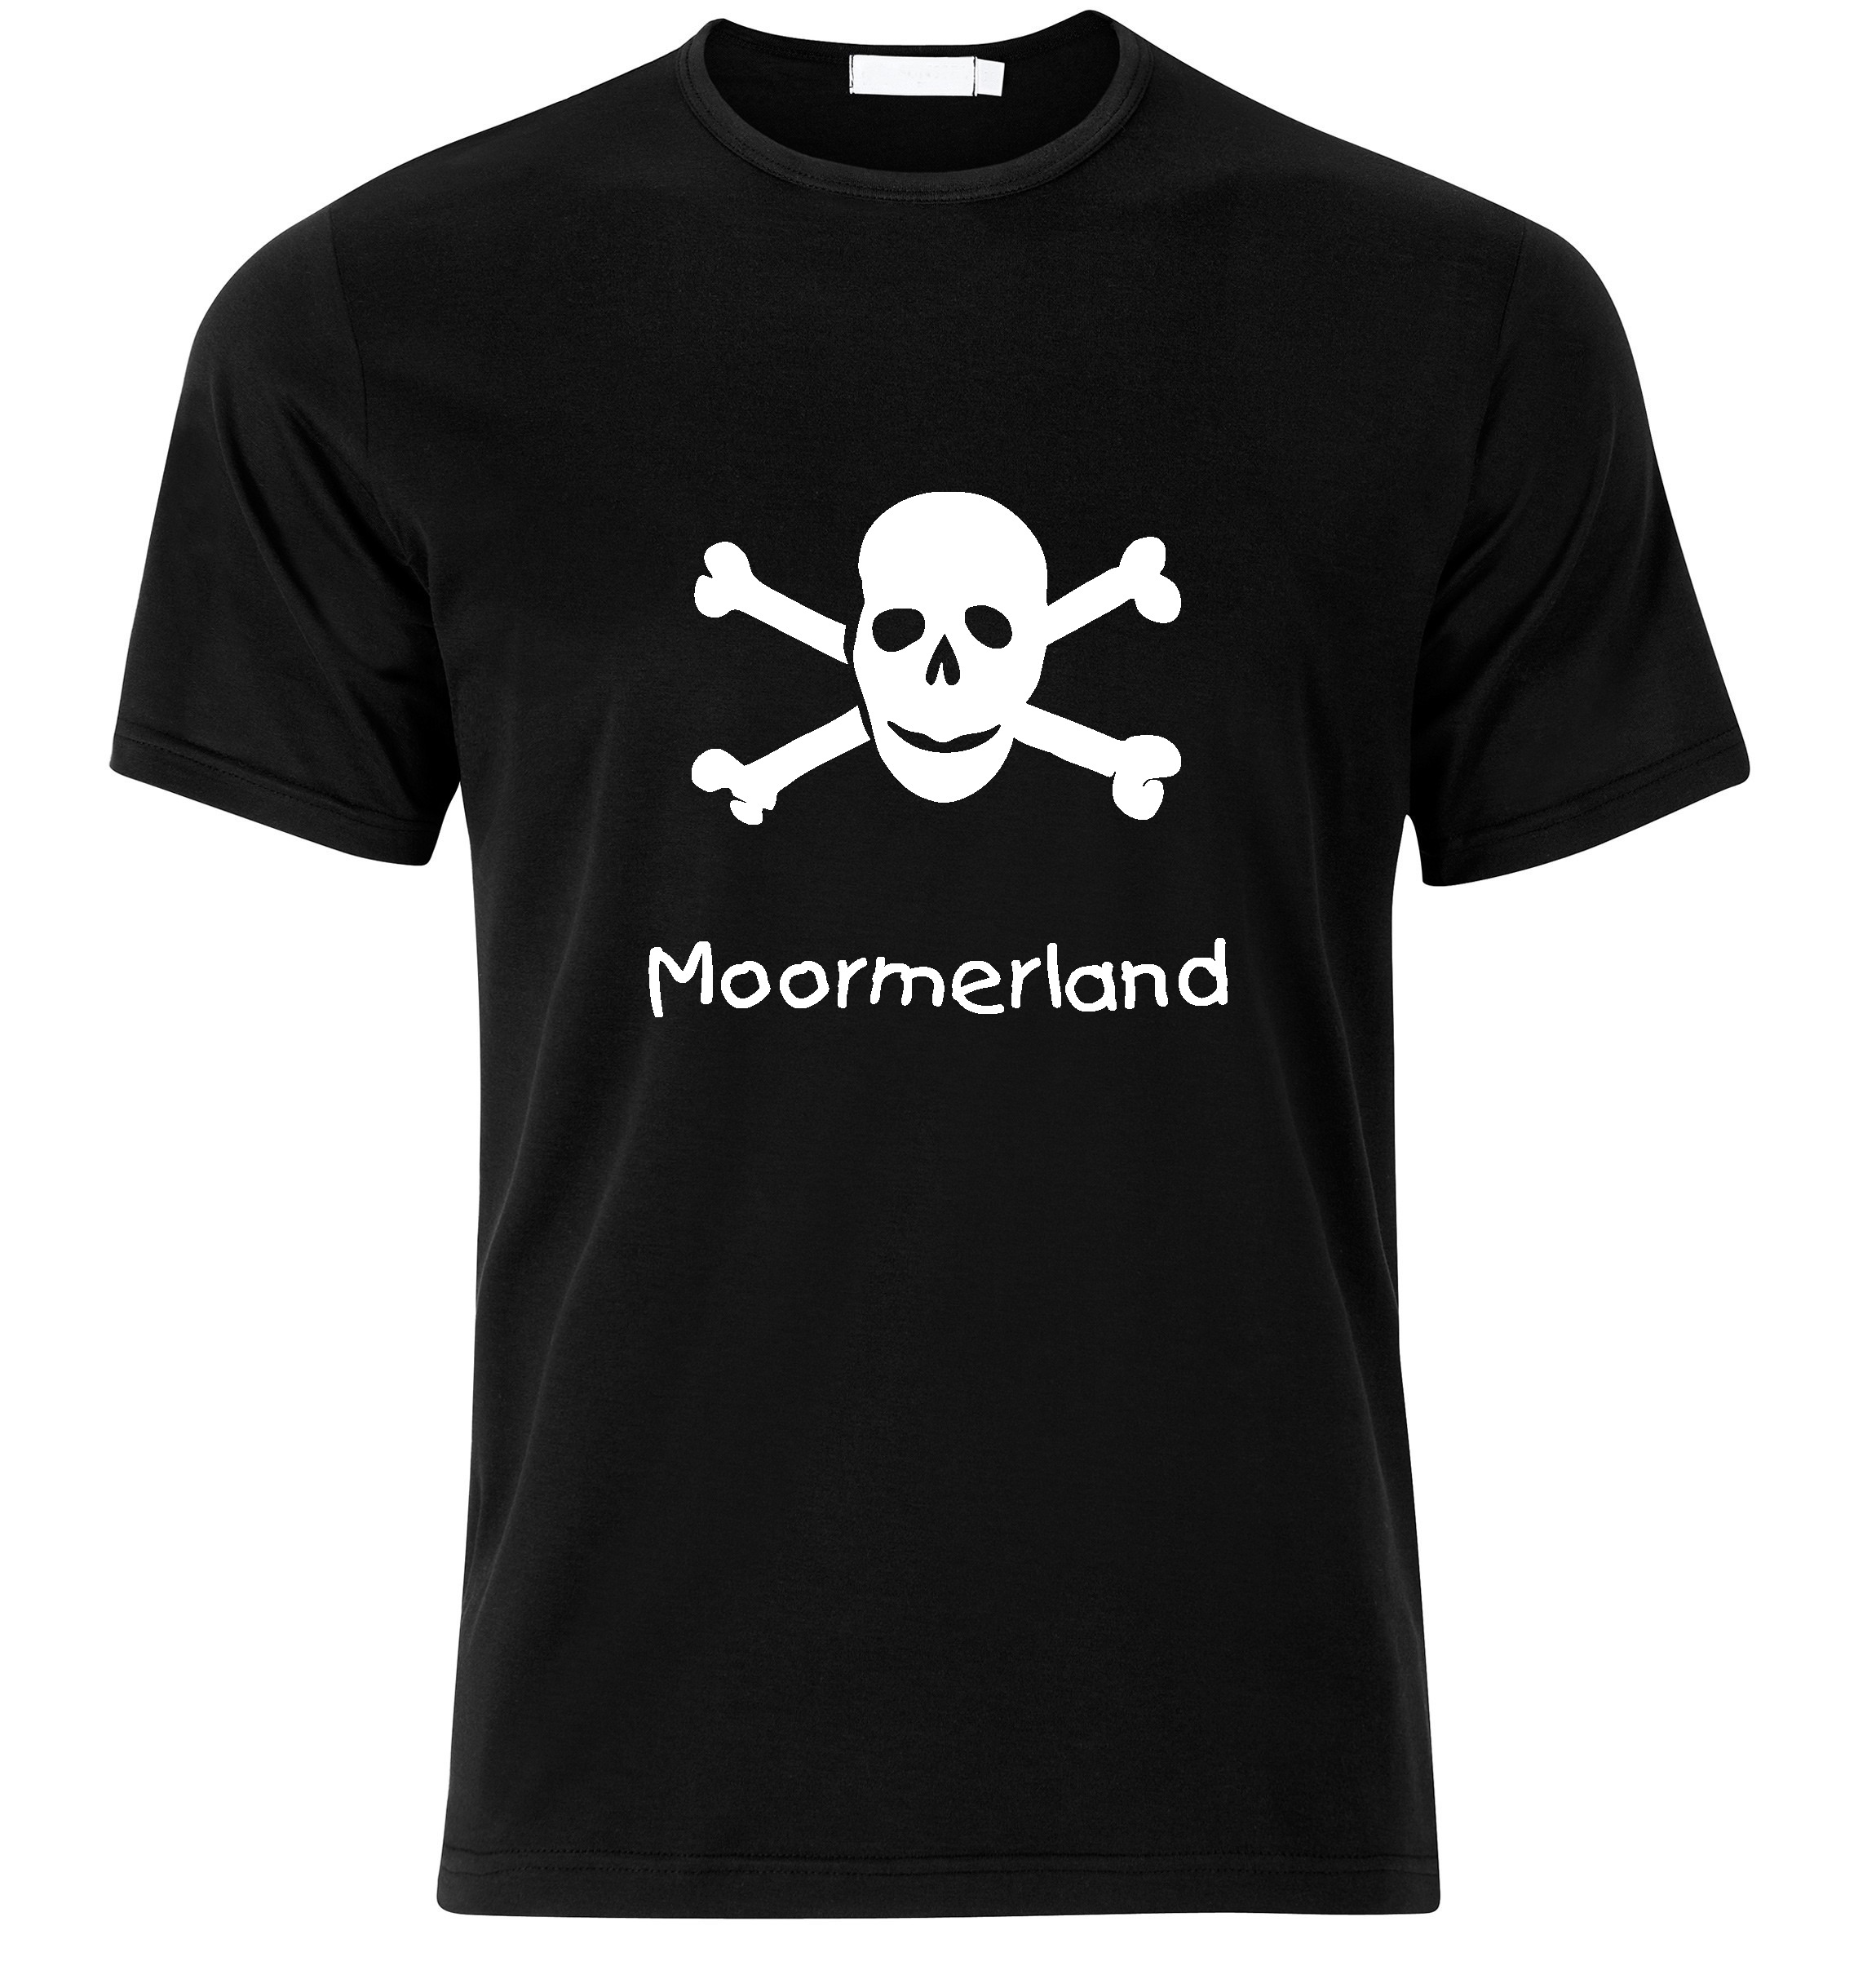 T-Shirt Moormerland Jolly Roger, Totenkopf